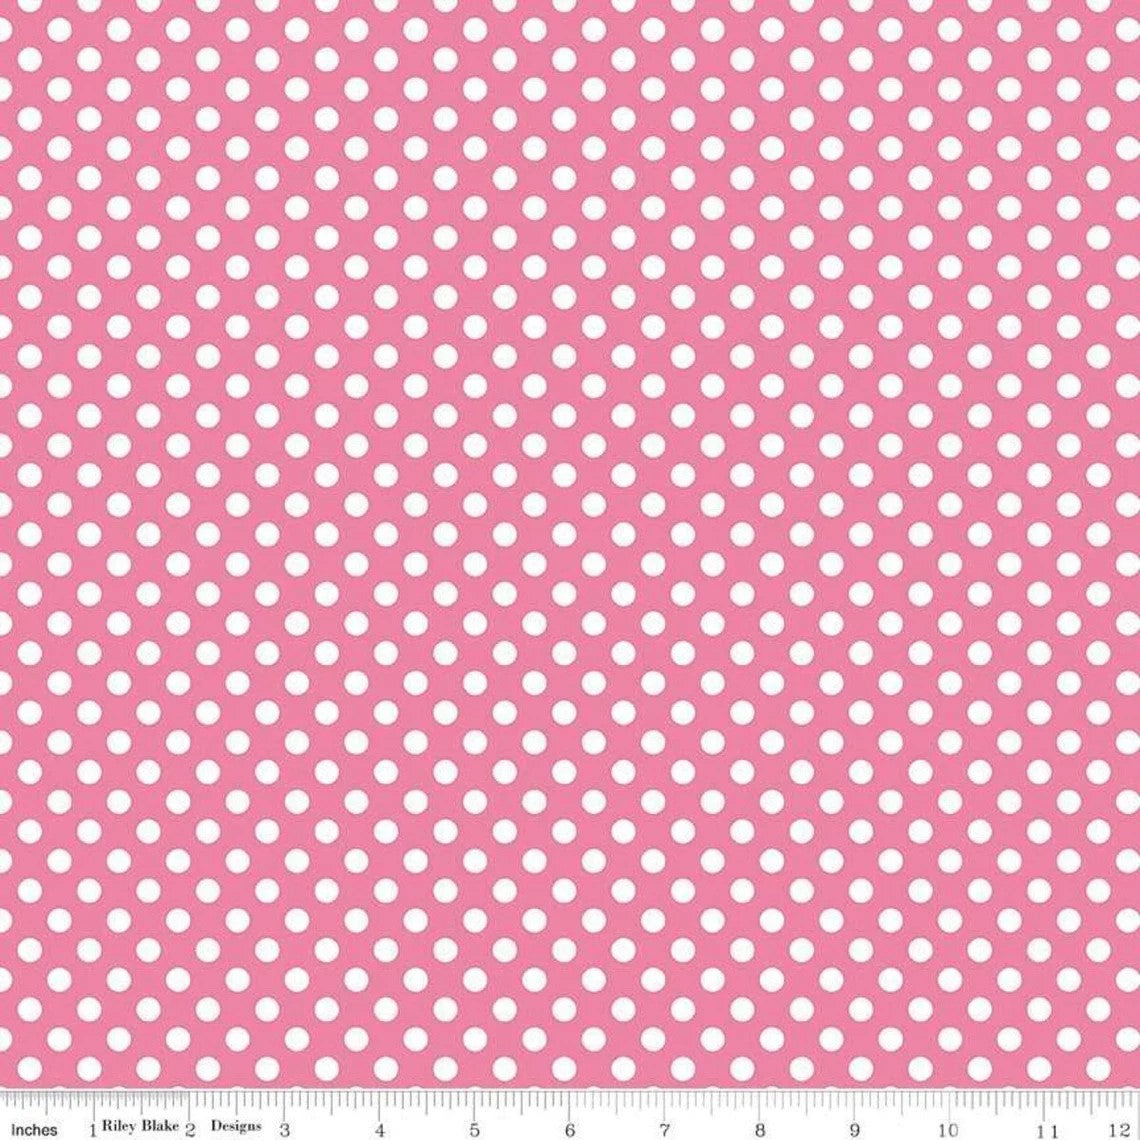 Riley Blake Small Dots Hot Pink C350-70